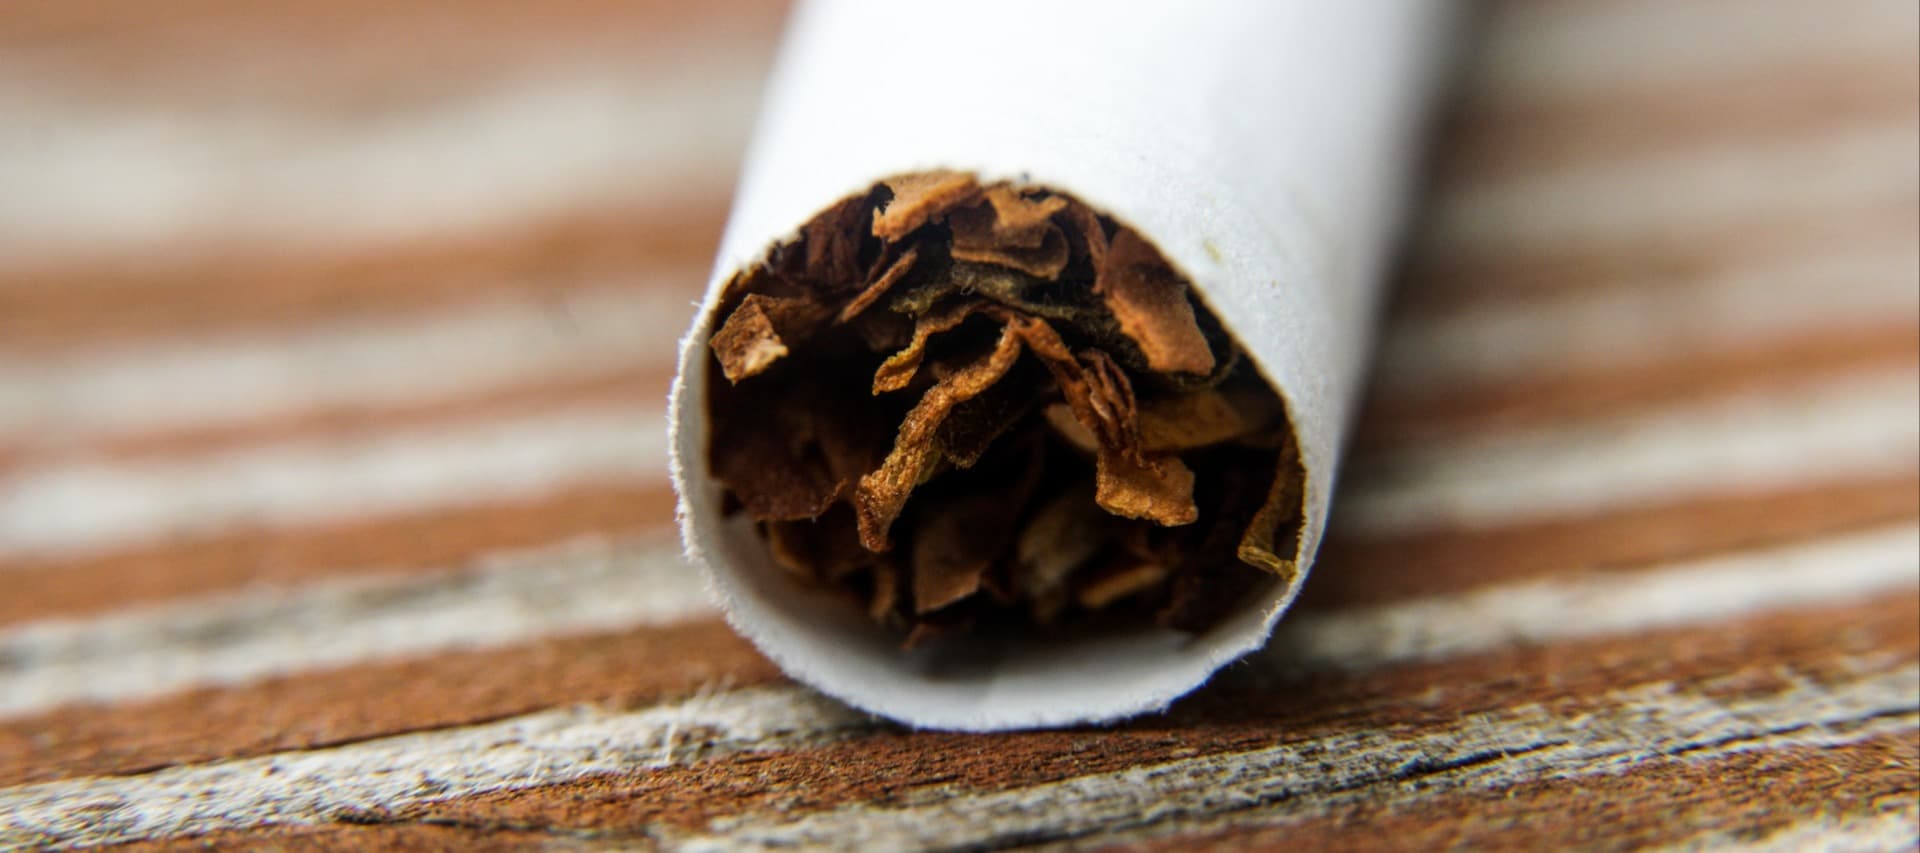 Фото новости: "Почти каждая десятая пачка сигарет в России продается нелегально"